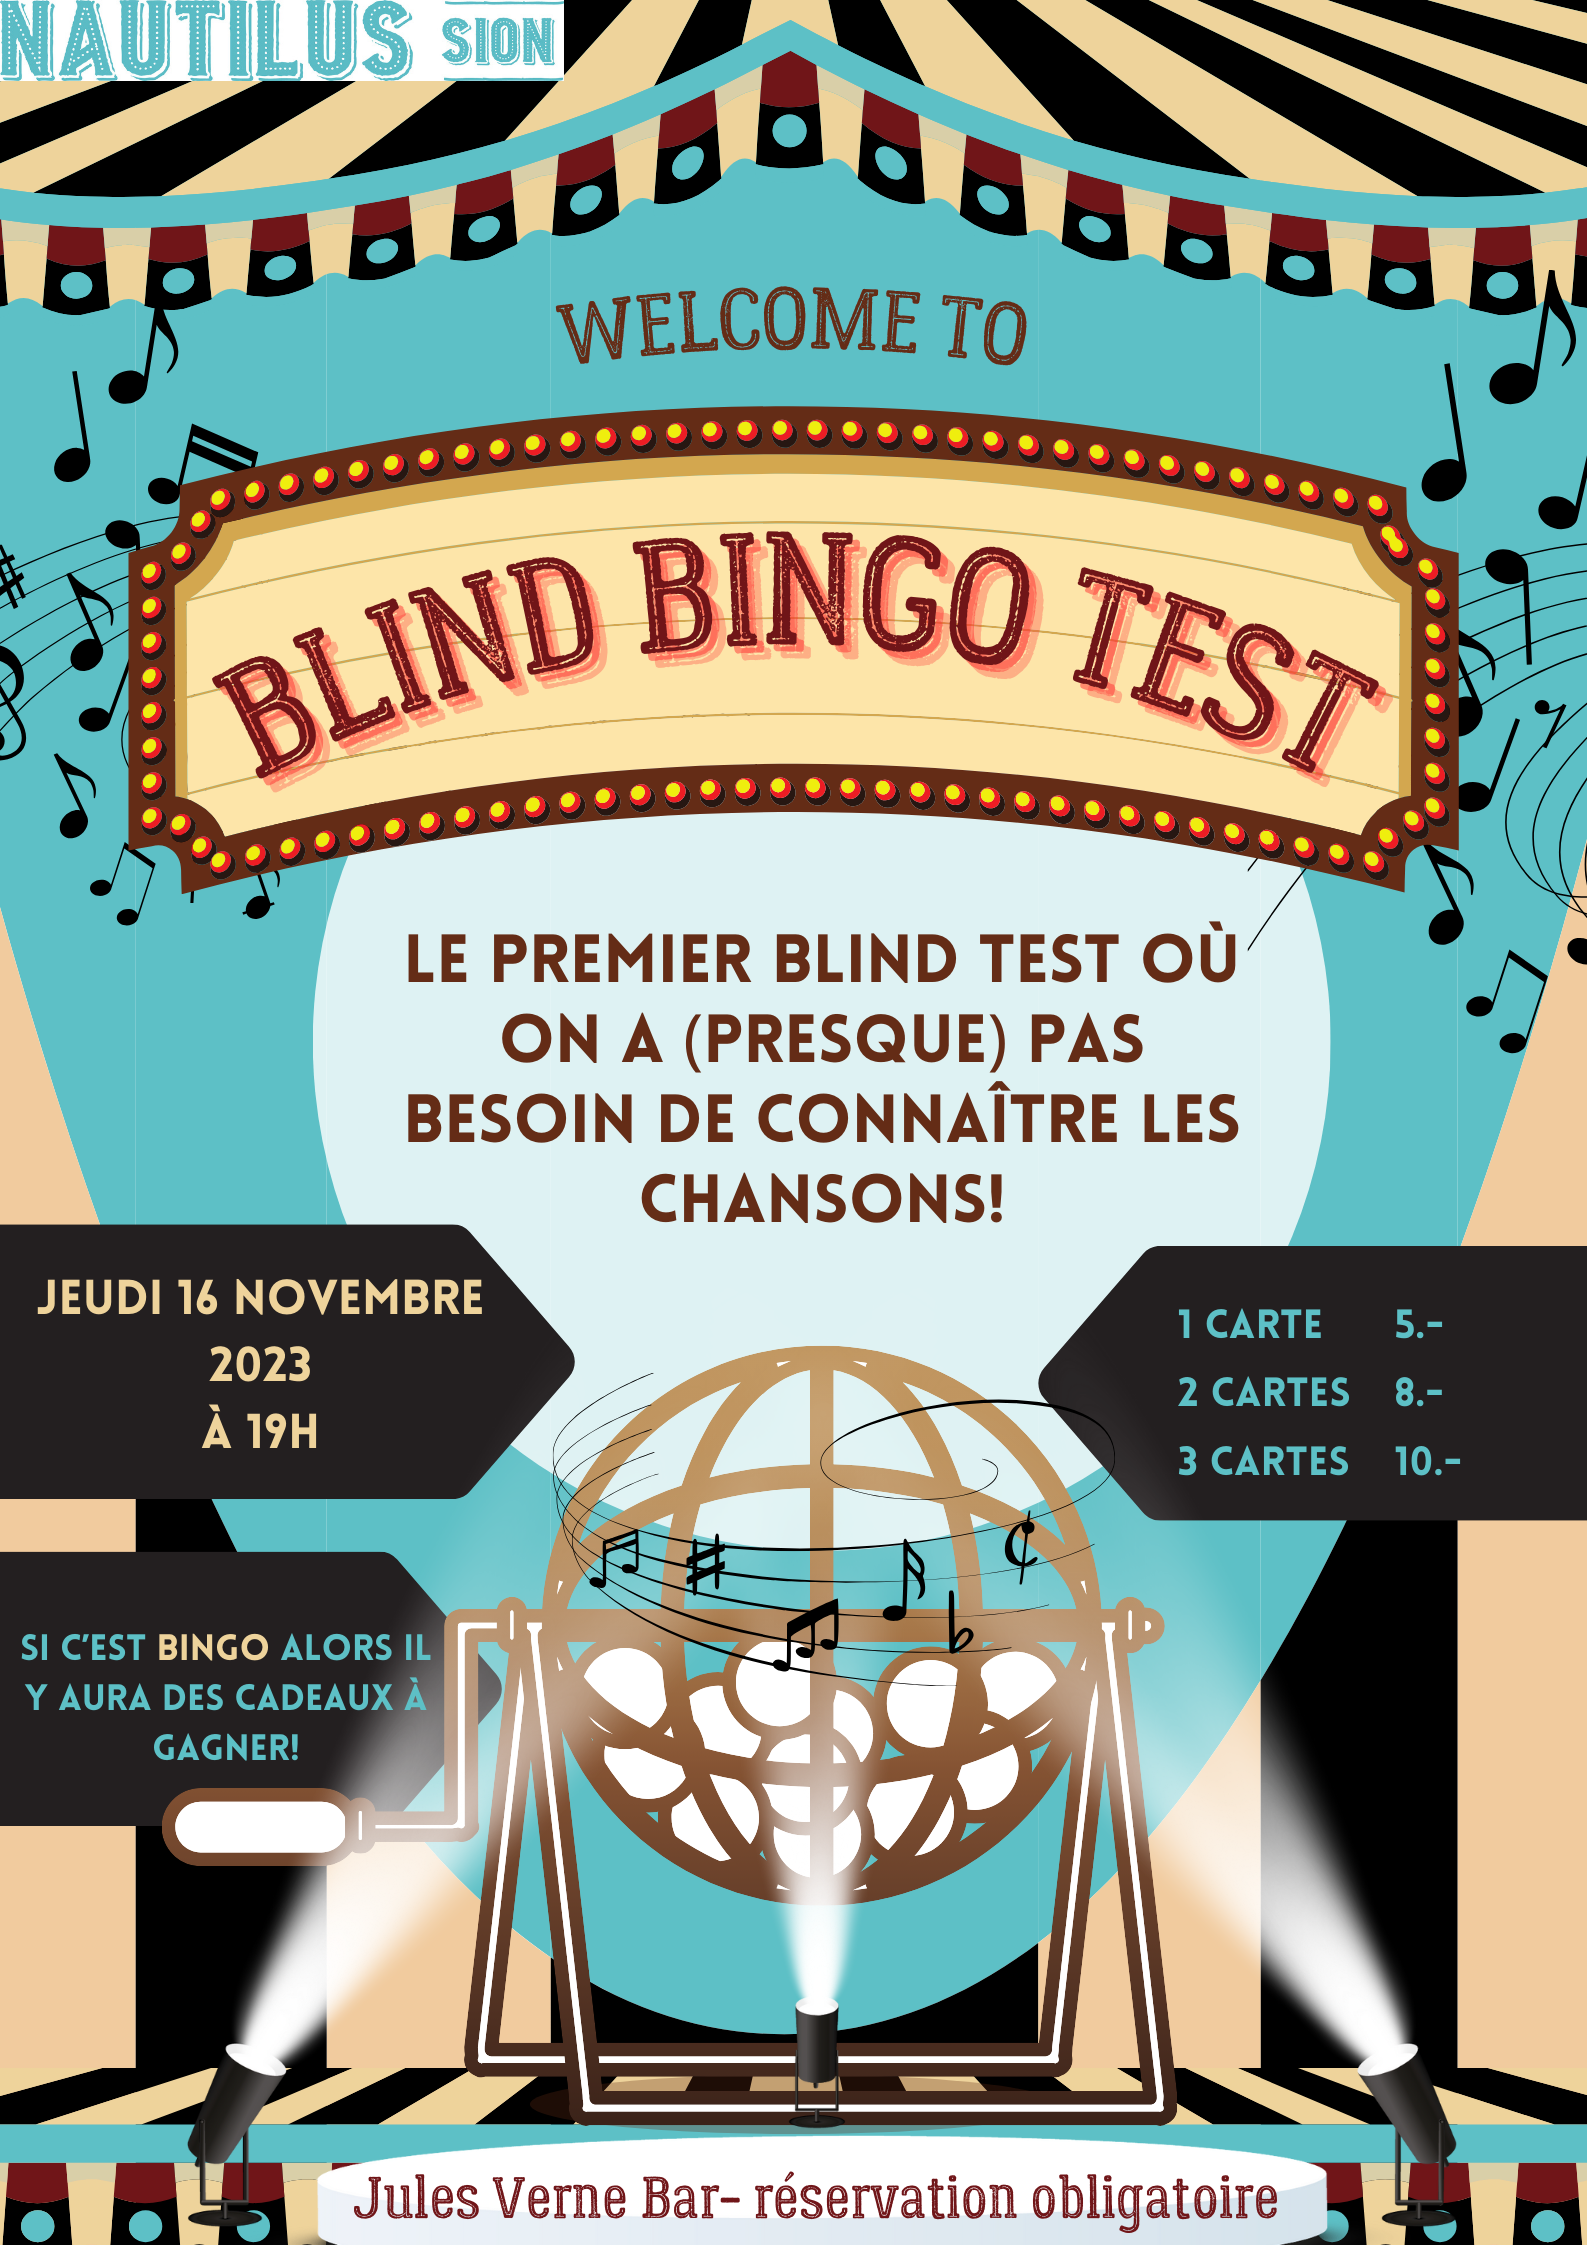 sion blind bingo test